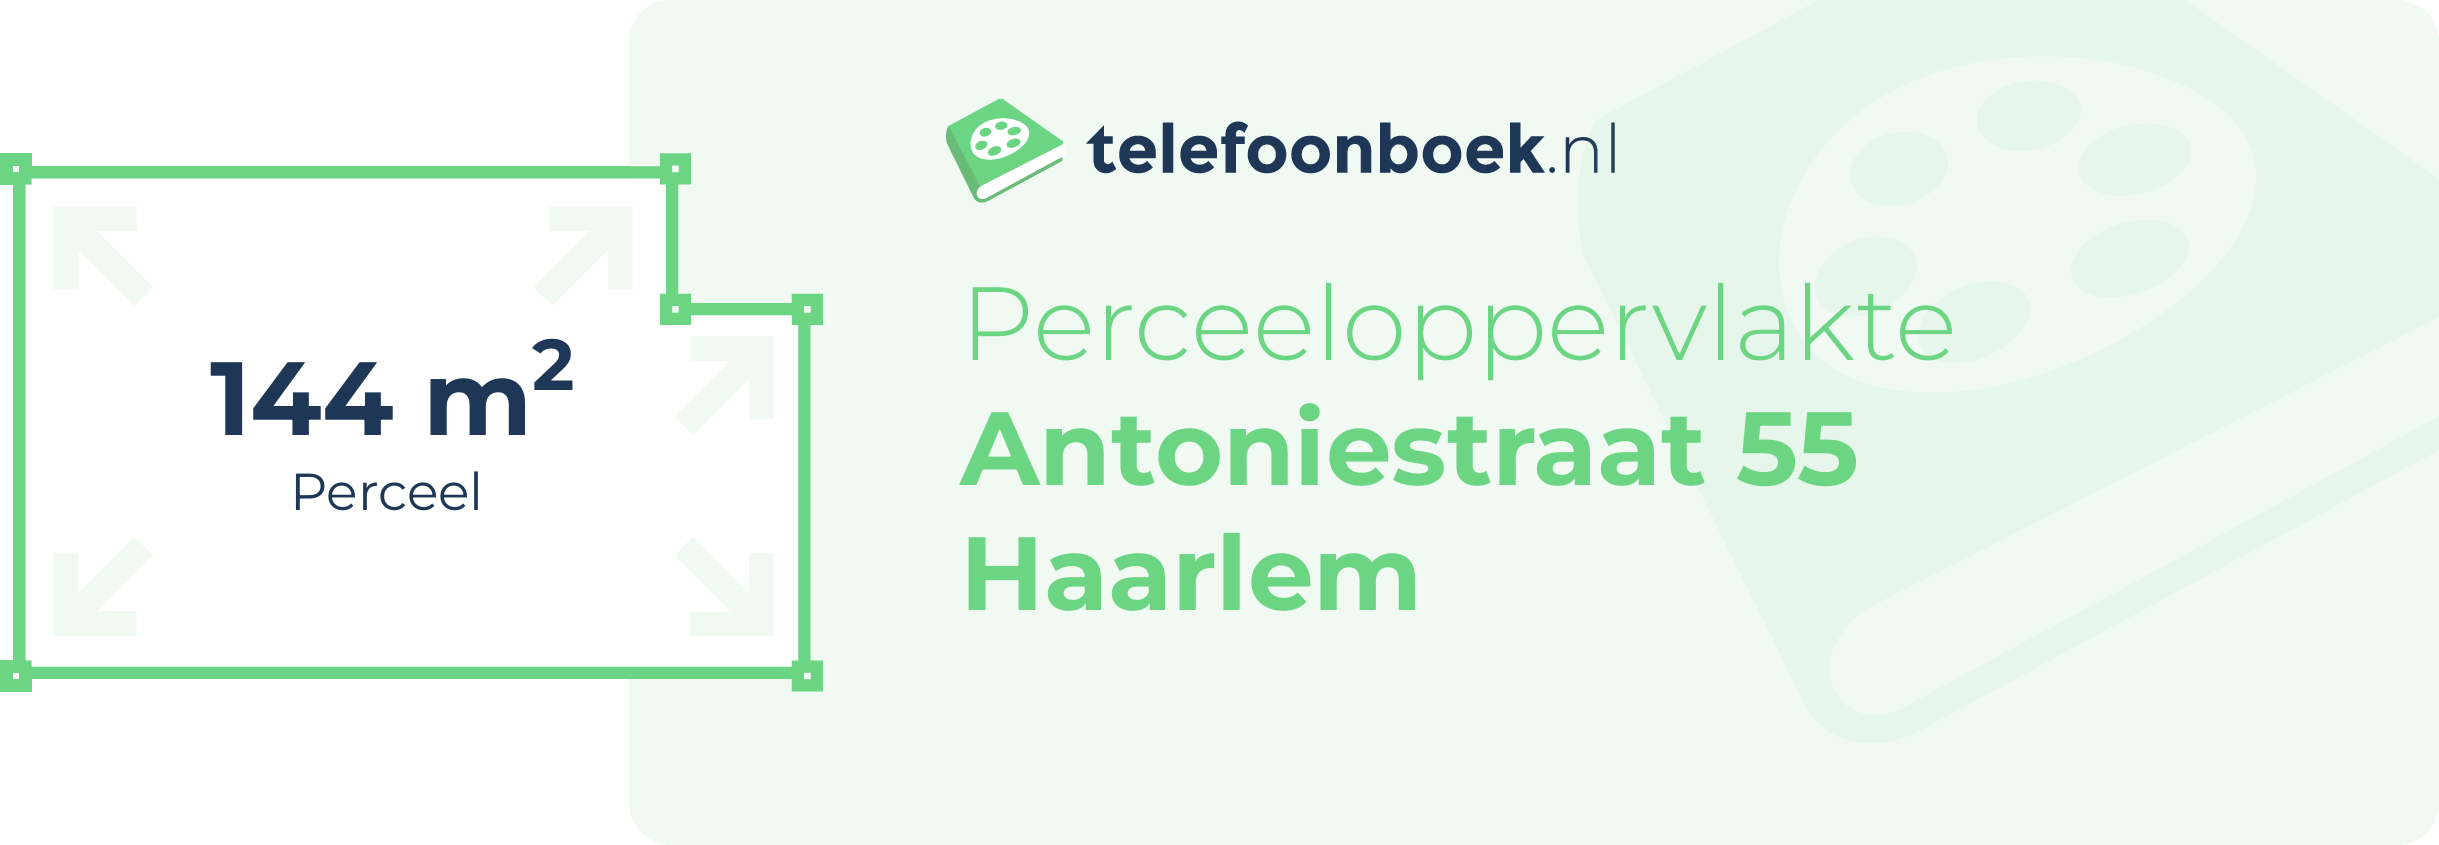 Perceeloppervlakte Antoniestraat 55 Haarlem